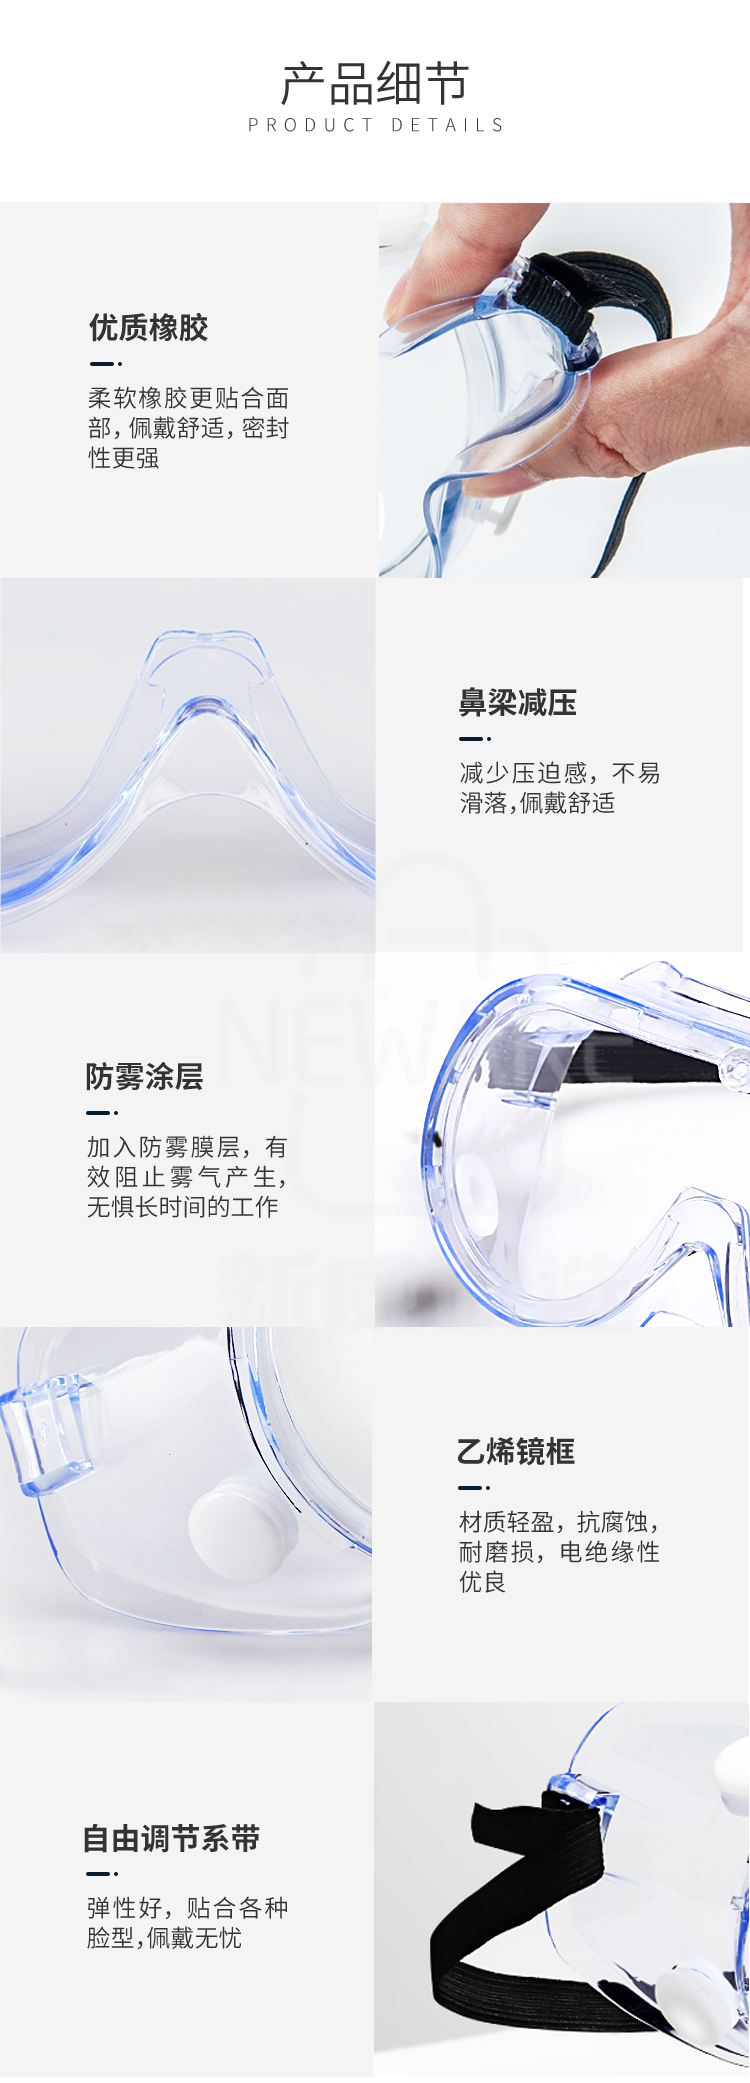 防雾防化学护目镜的产品细节